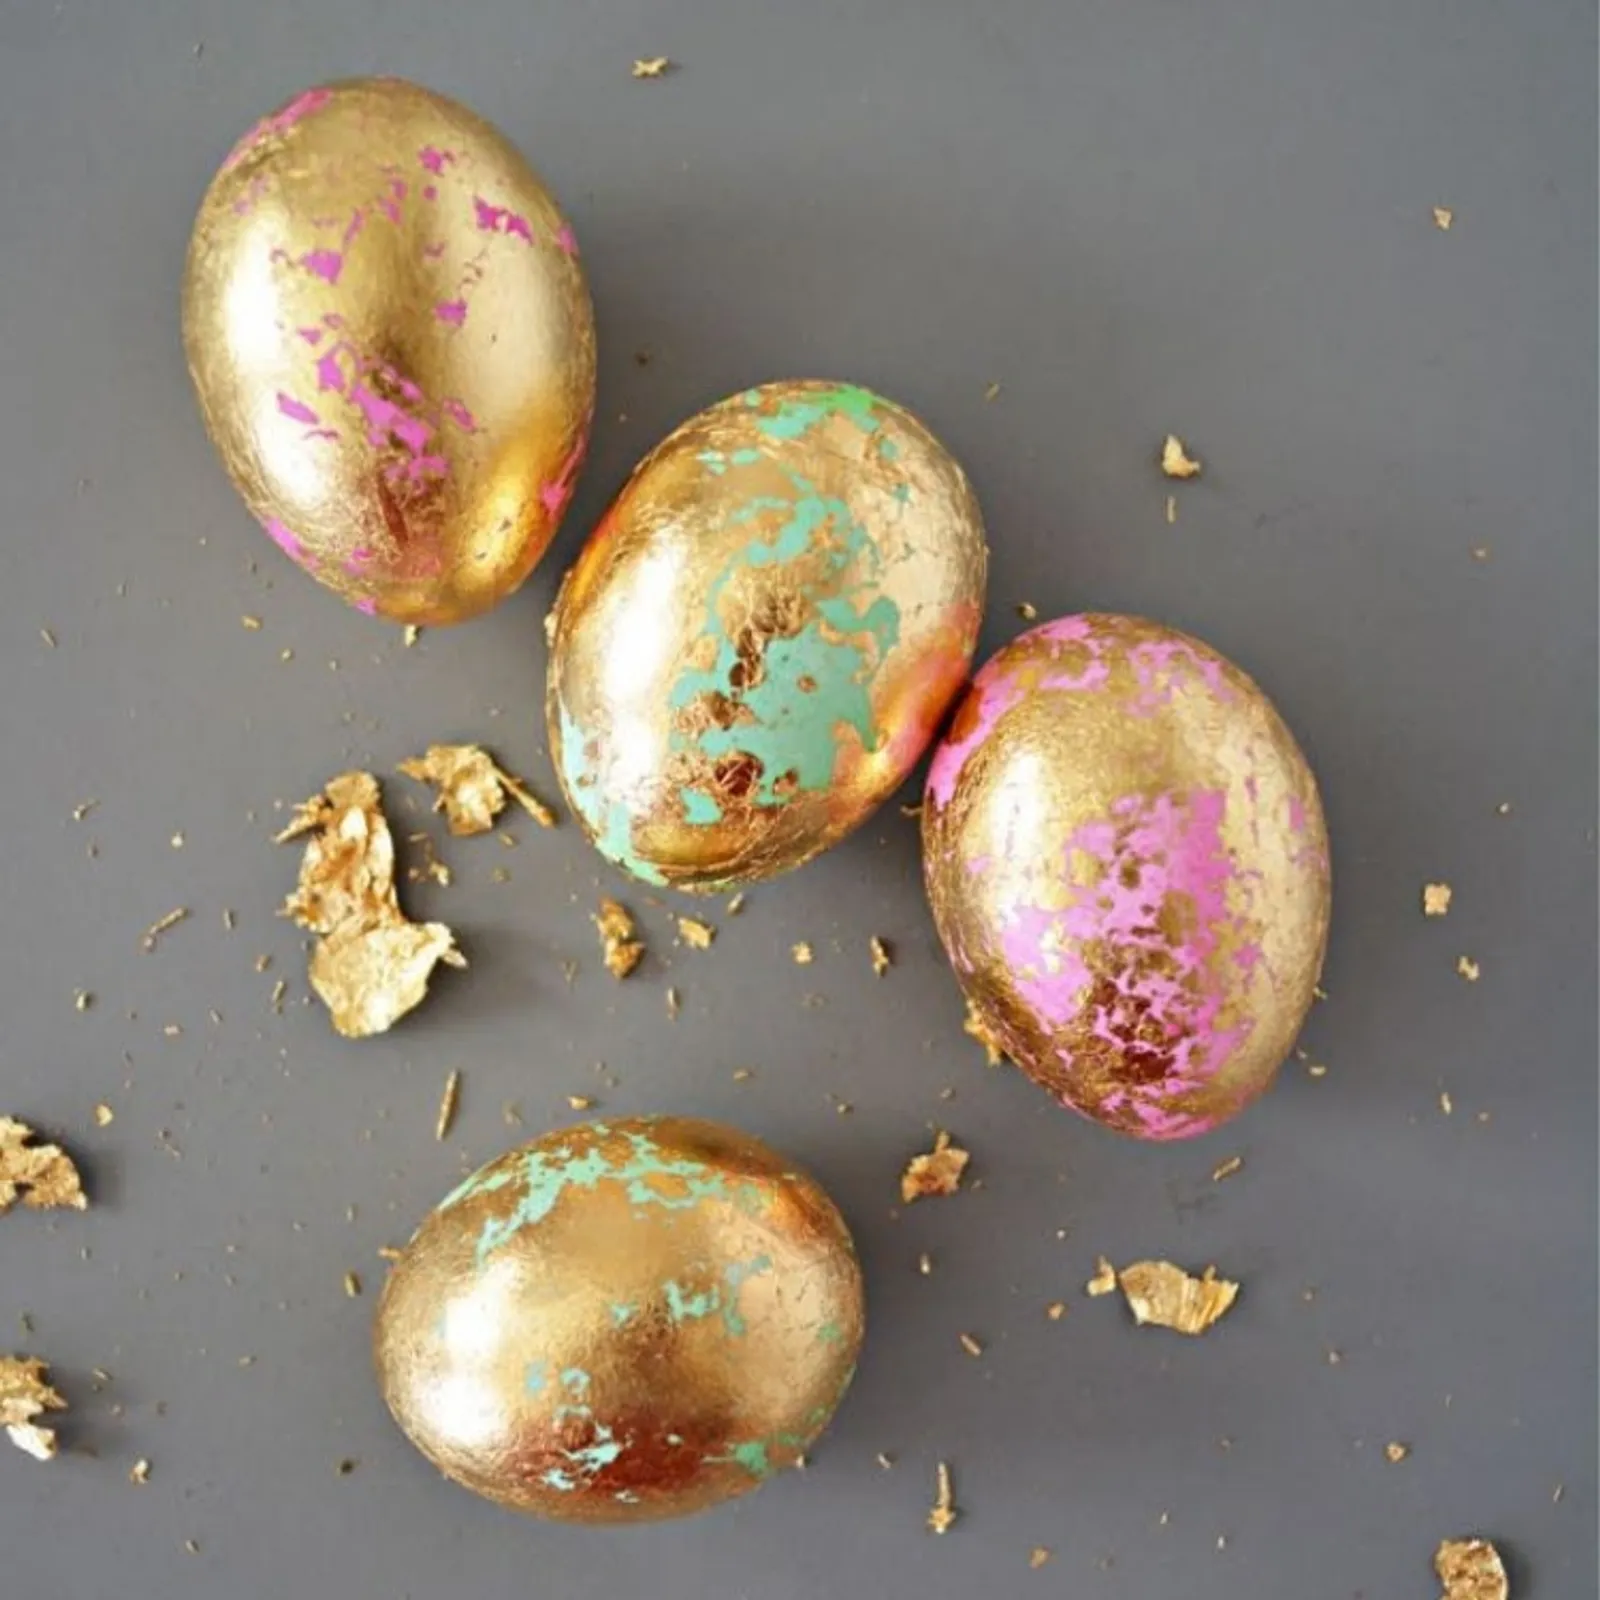 Sambut Paskah, Ini Inspirasi 10 Kreasi Telur Paskah Unik